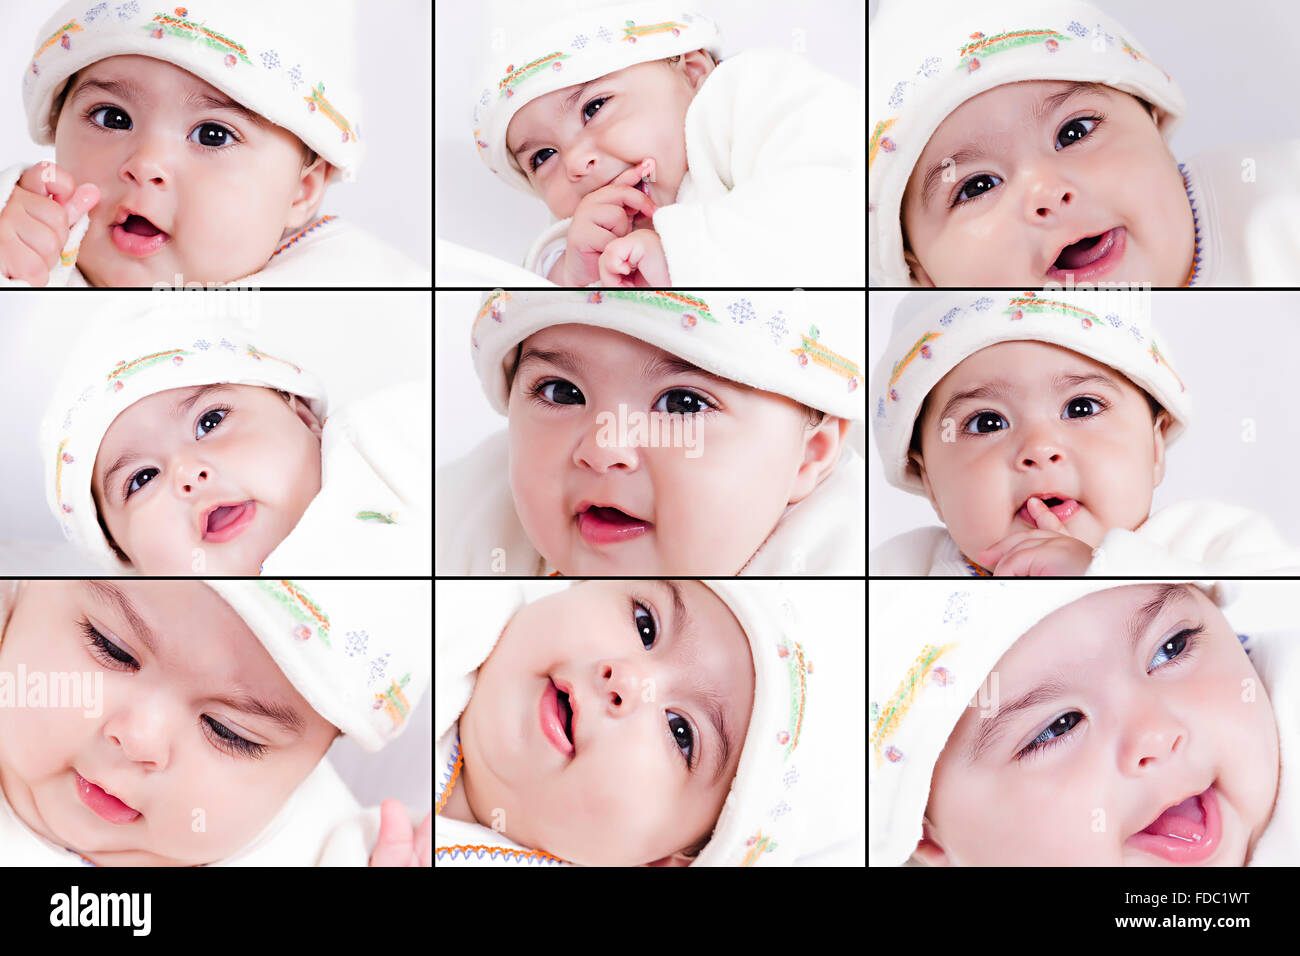 Close up 1 bébé fille enfant mignon expression faciale montage photo Banque D'Images